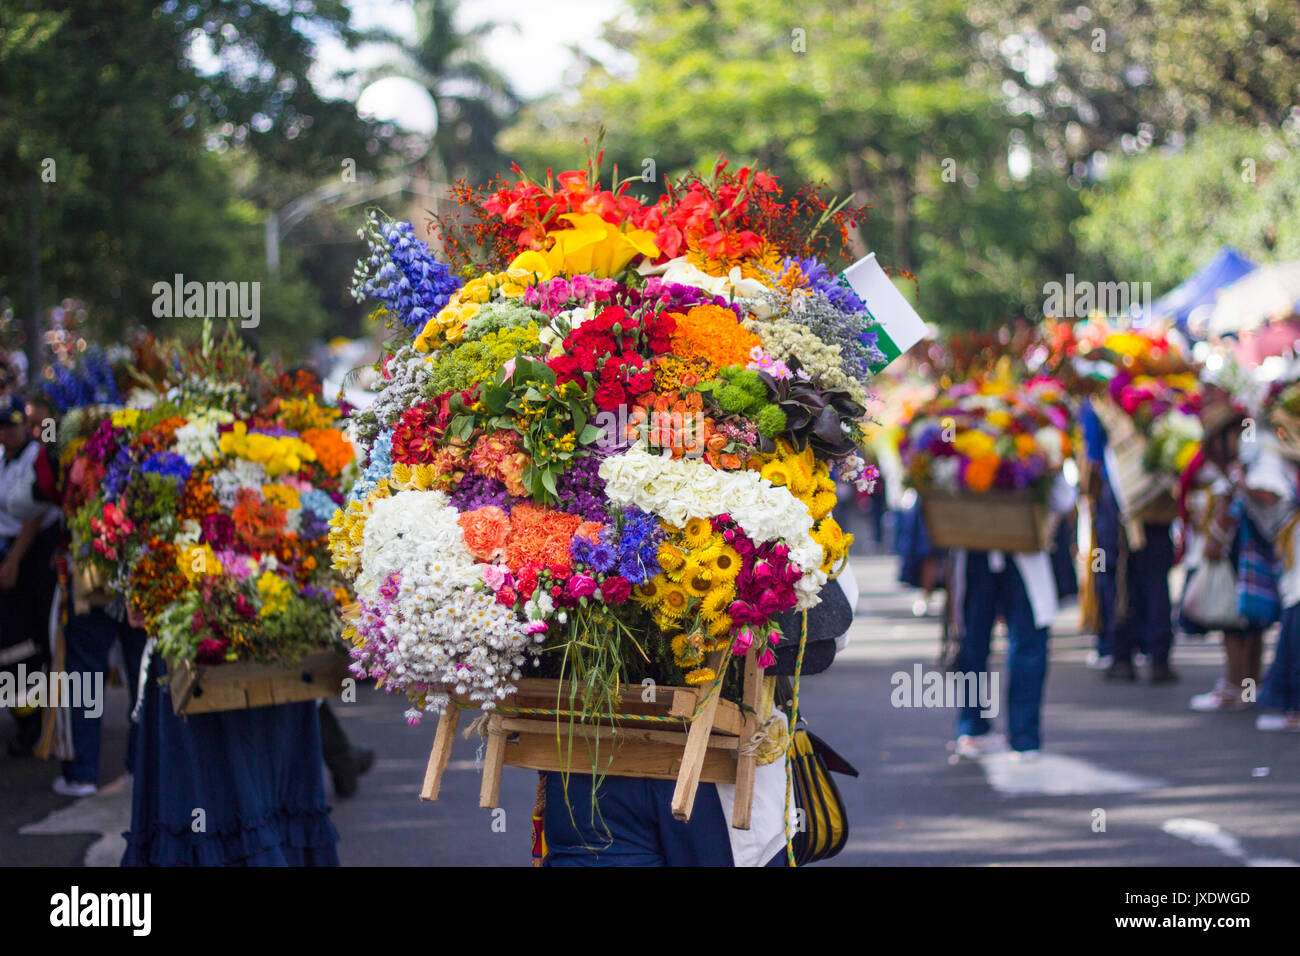 Ein Mann trägt Blüten mit der Holzkiste in ihr zurück in den letzten Tag des Festivals der Blumen in Medellin, Kolumbien am 8. August 2017. Stockfoto